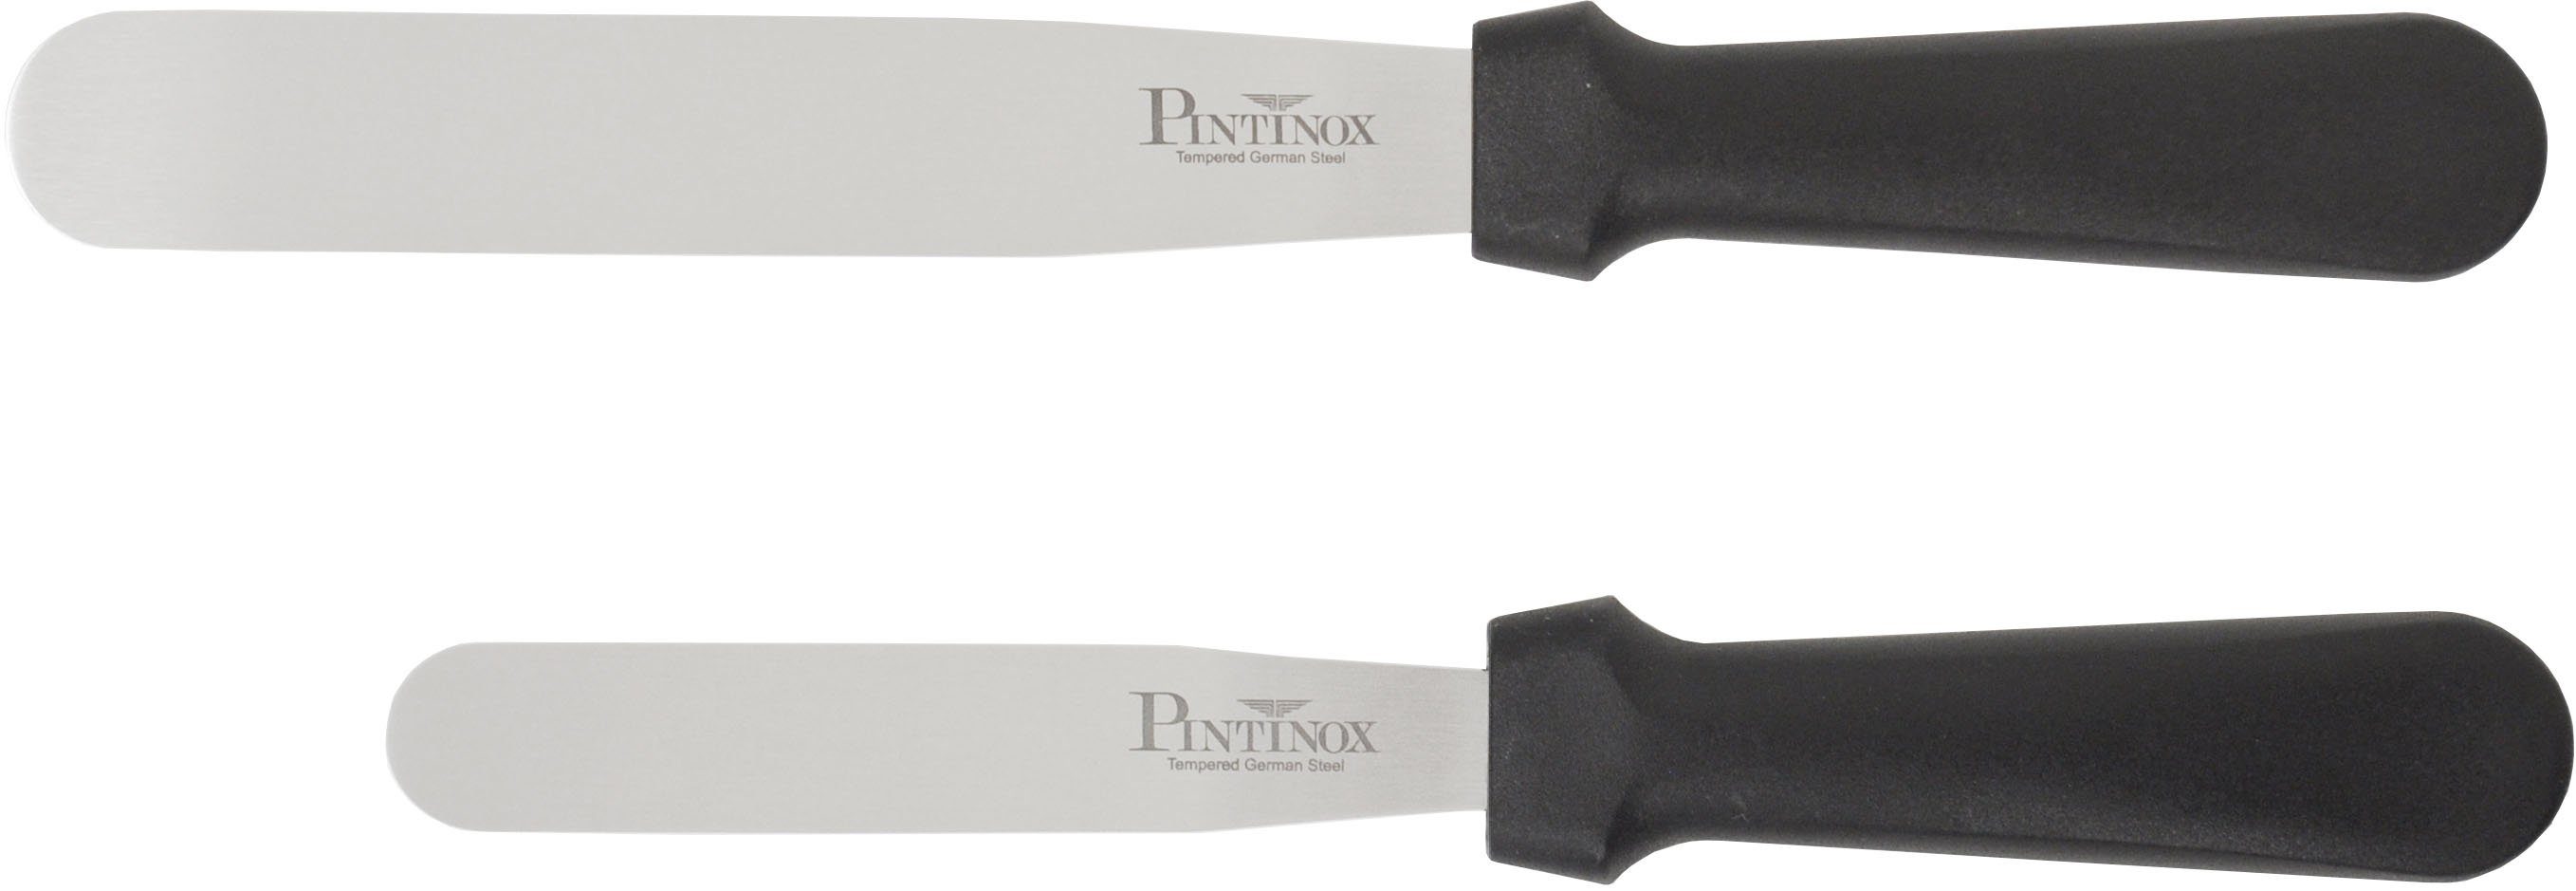 PINTINOX Streichpalette 10,5cm, Professional, Spatel 1 spülmaschinengeeinget, Edelstahl, Spatel 1 15,9 cm